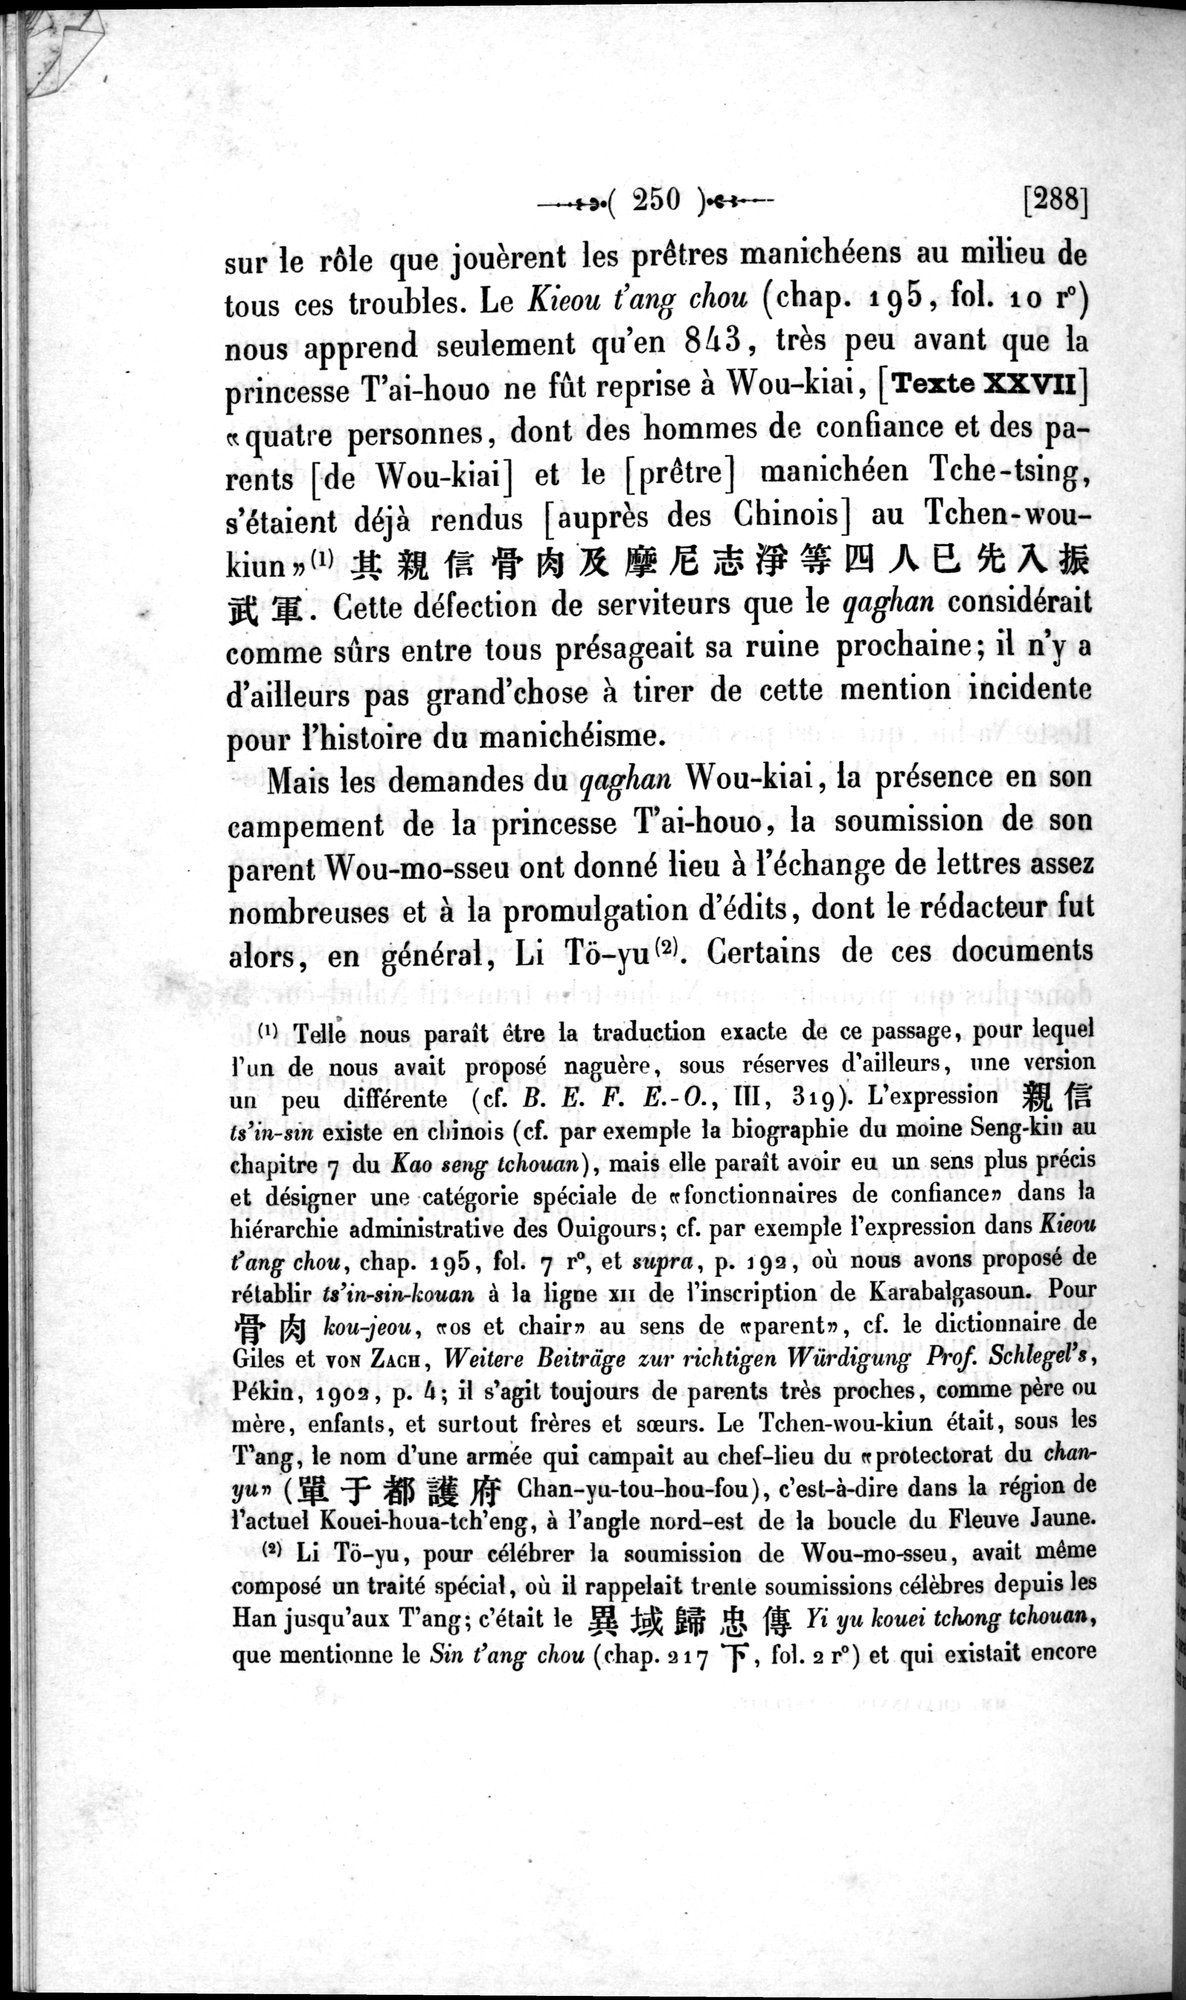 Un traité manichéen retrouvé en Chine : vol.1 / Page 260 (Grayscale High Resolution Image)